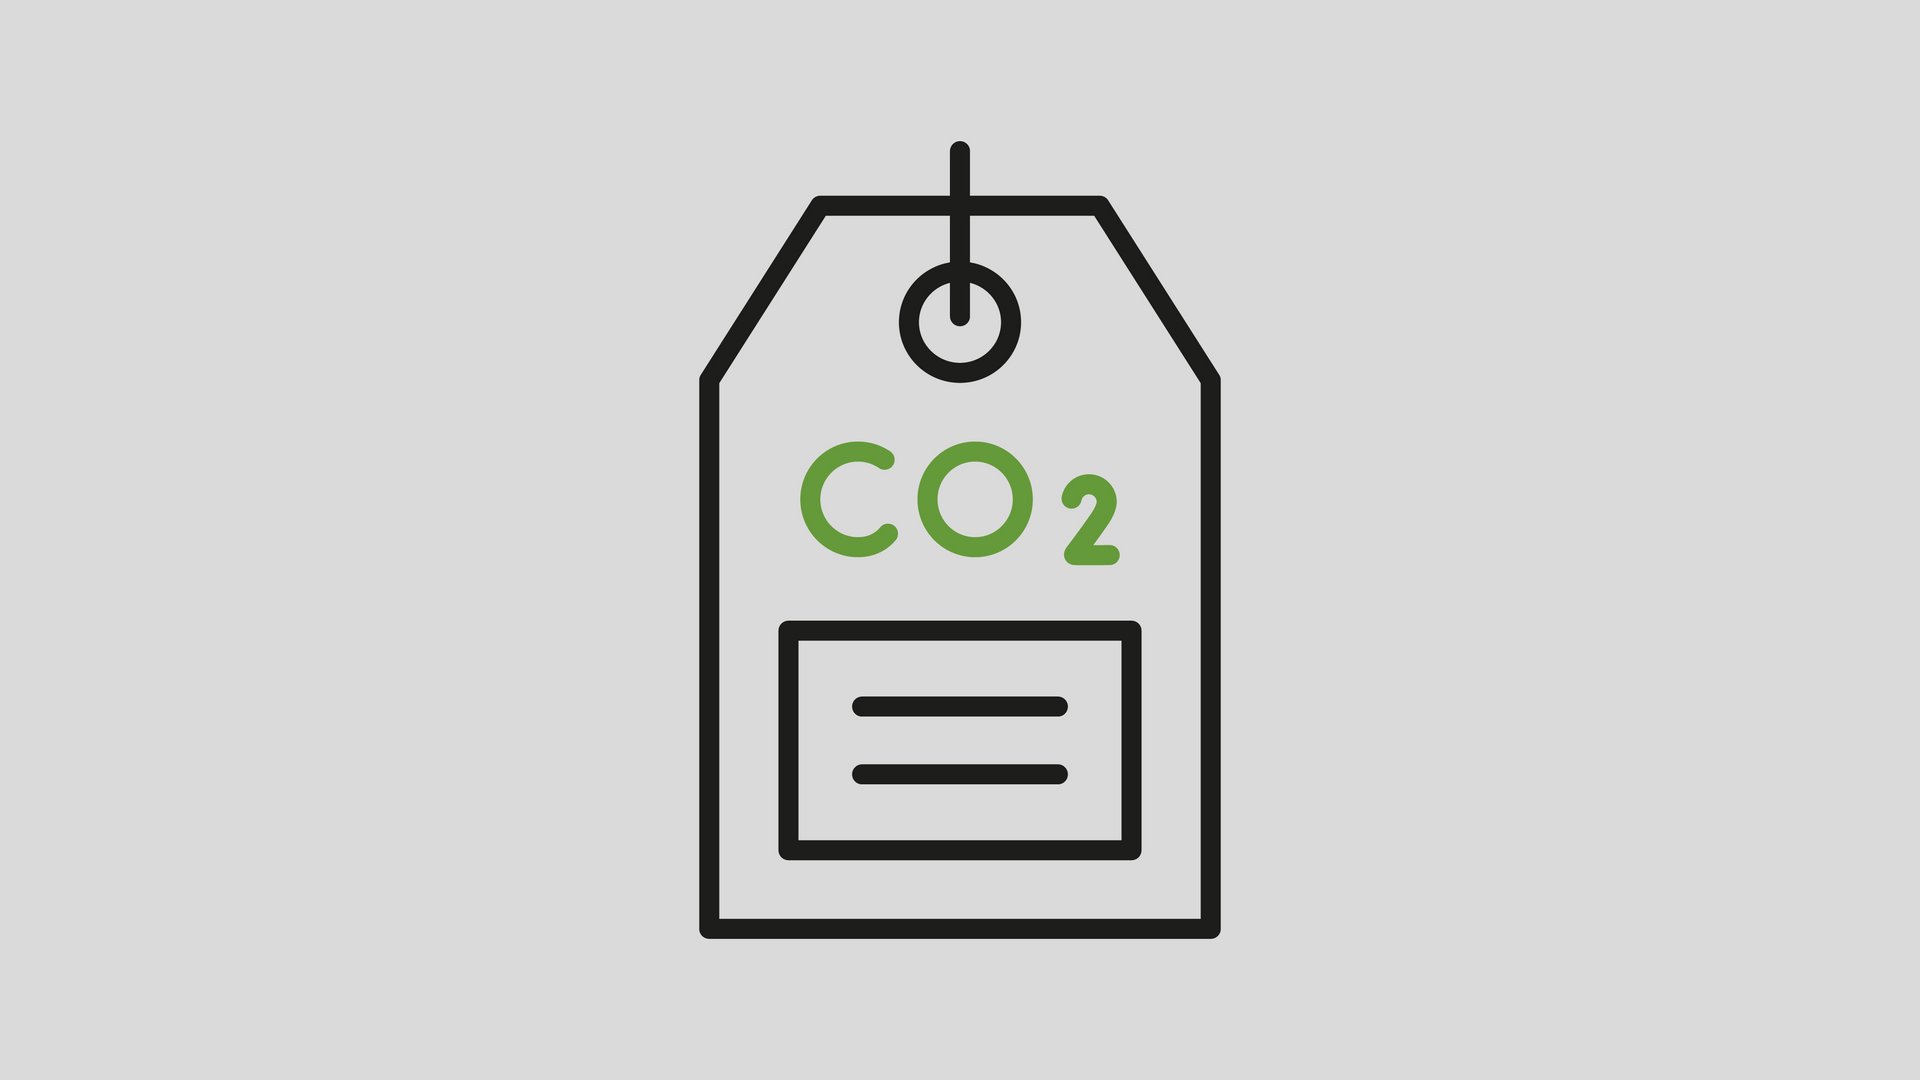 Preisschild für CO2